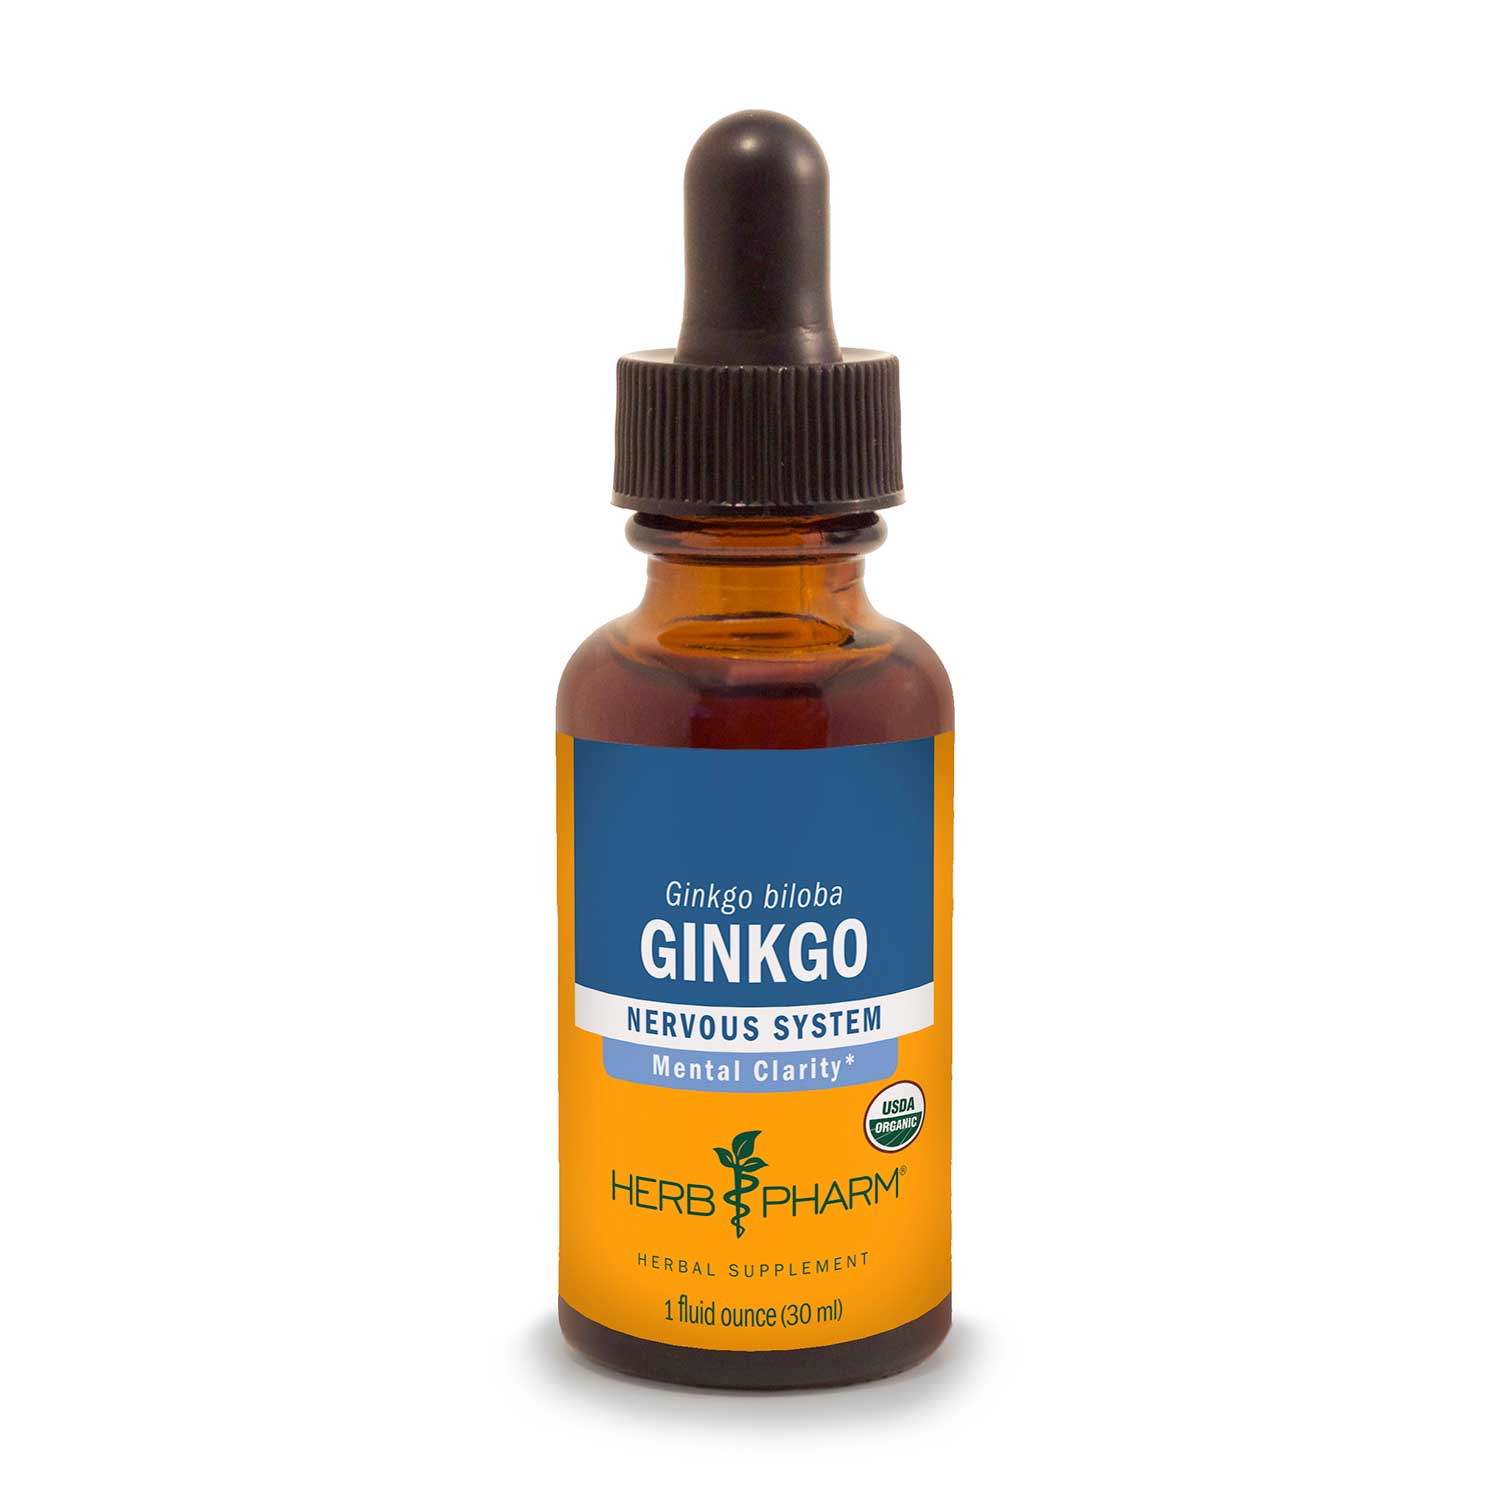 Ginkgo Biloba Extract - SA Herbal Bioactives